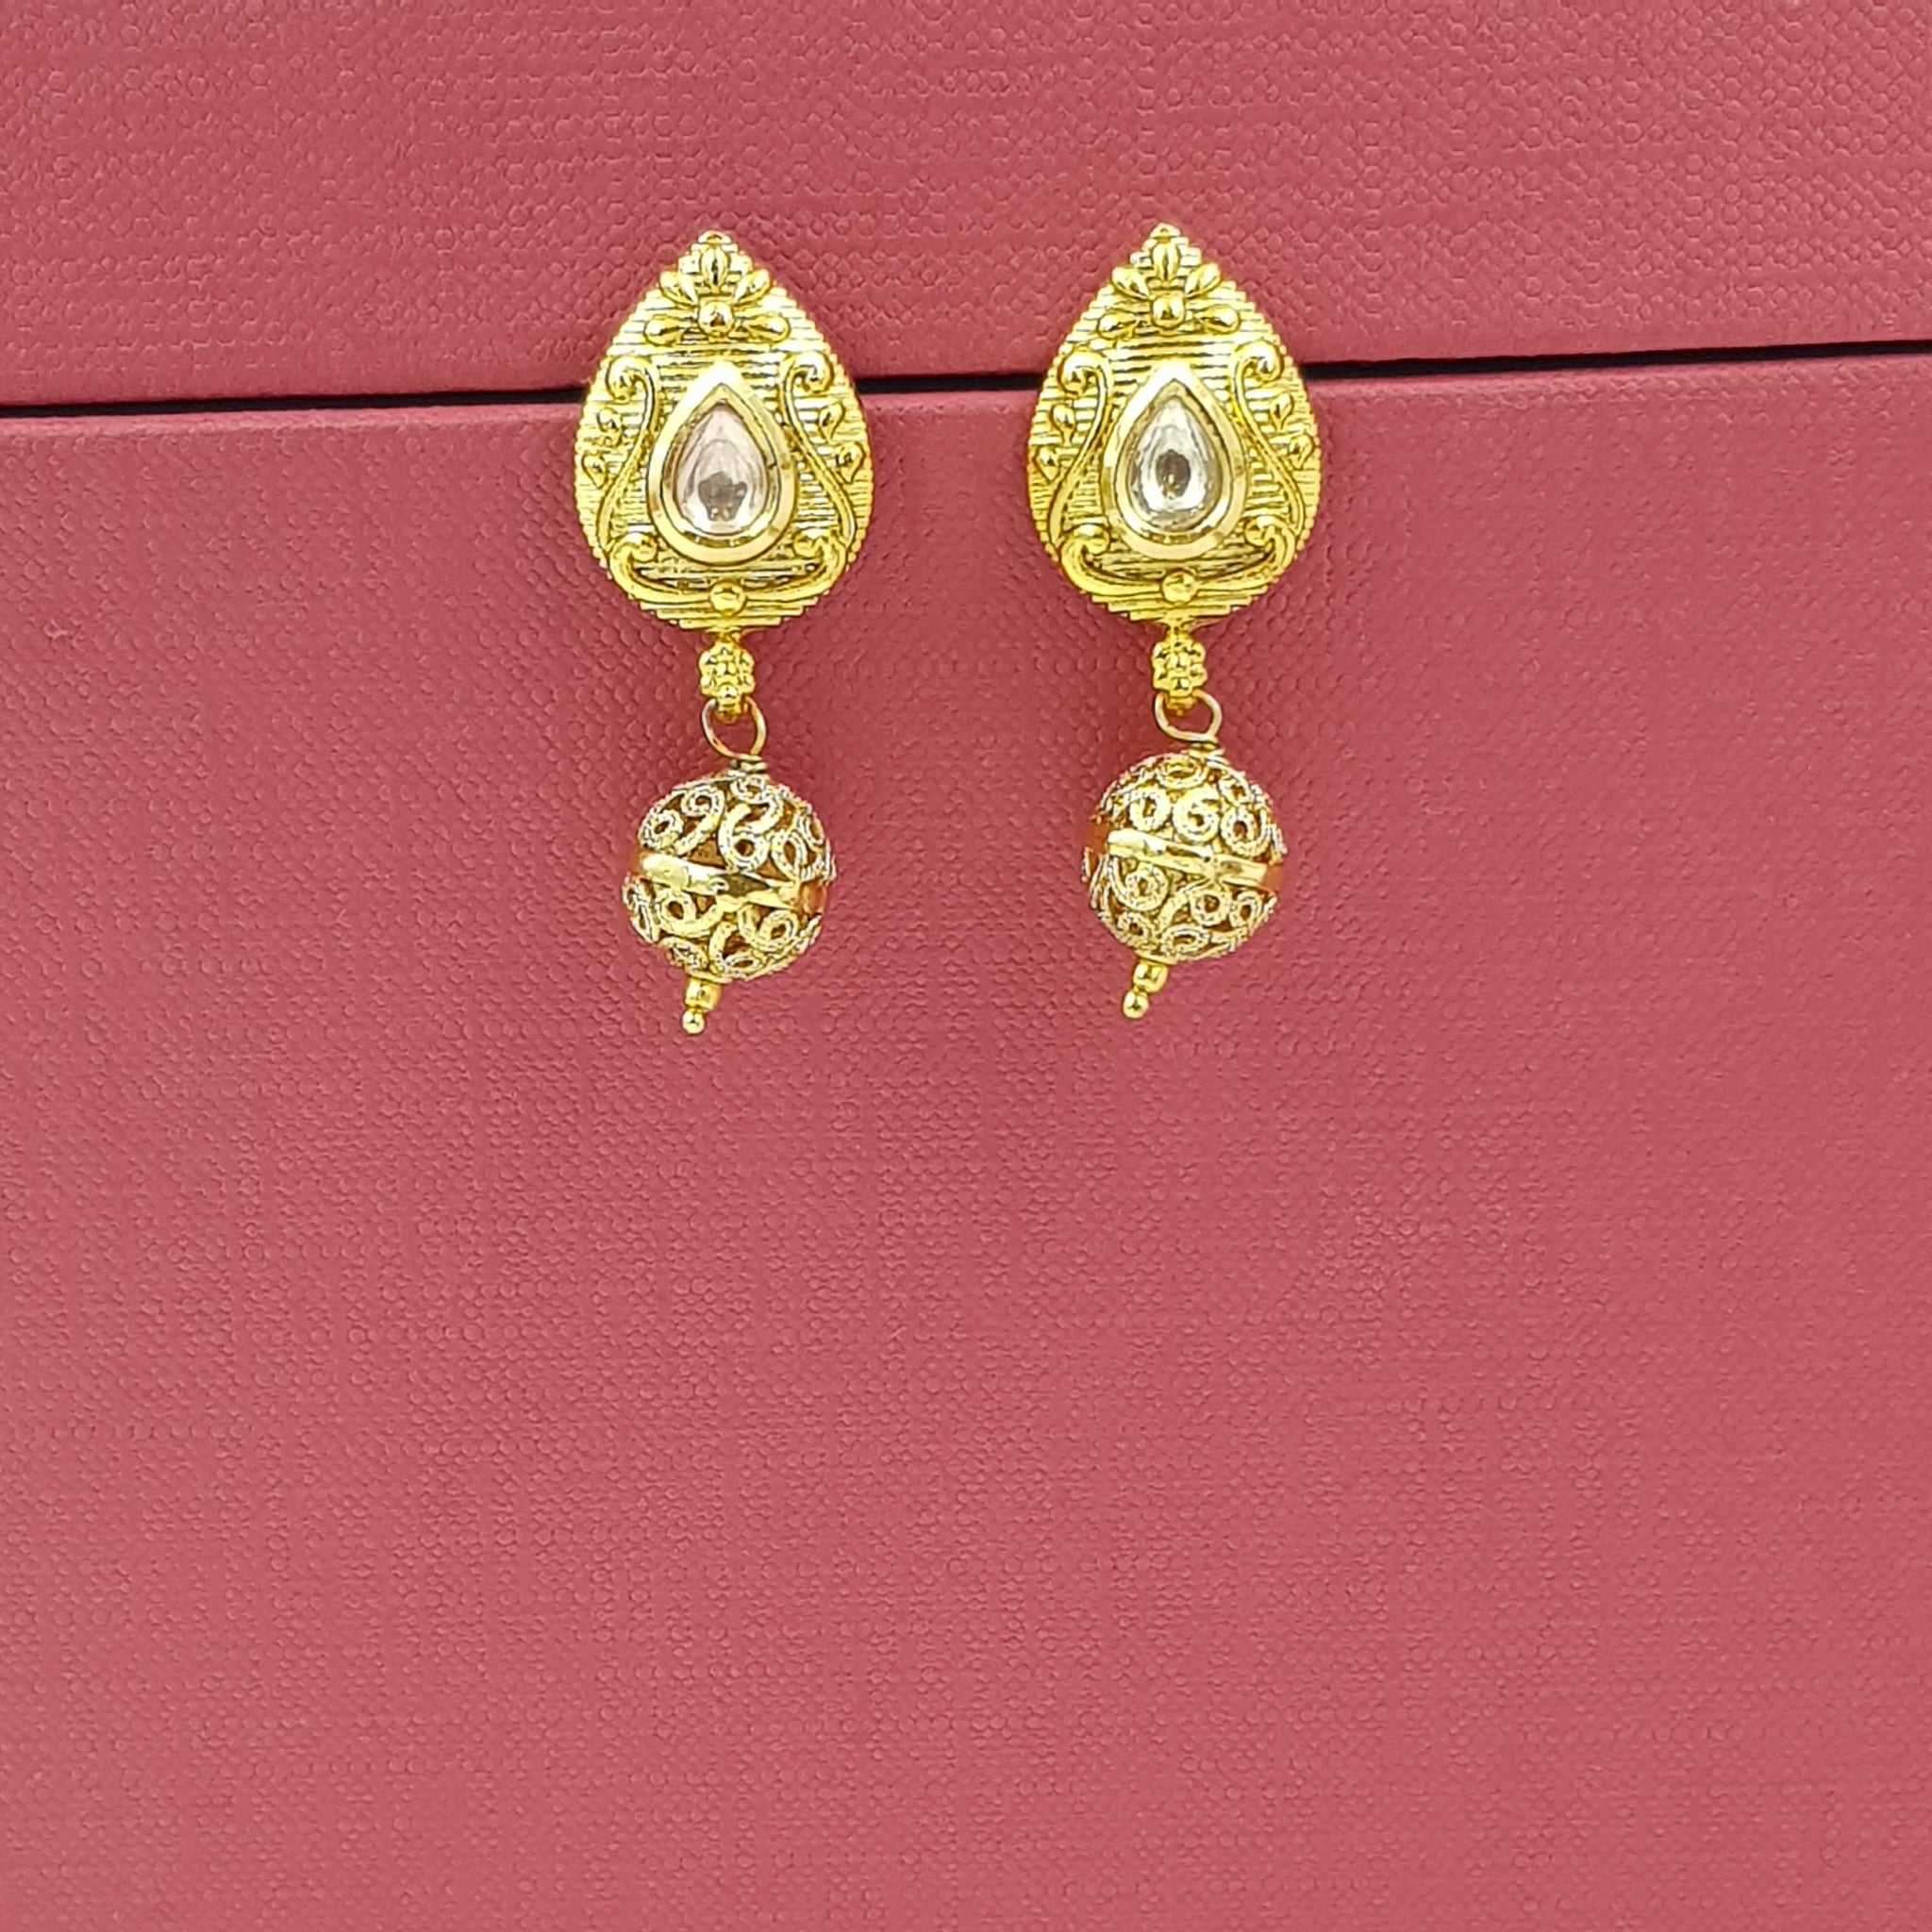 Light Earring Gold Look Earring 9113-100 - Dazzles Jewellery